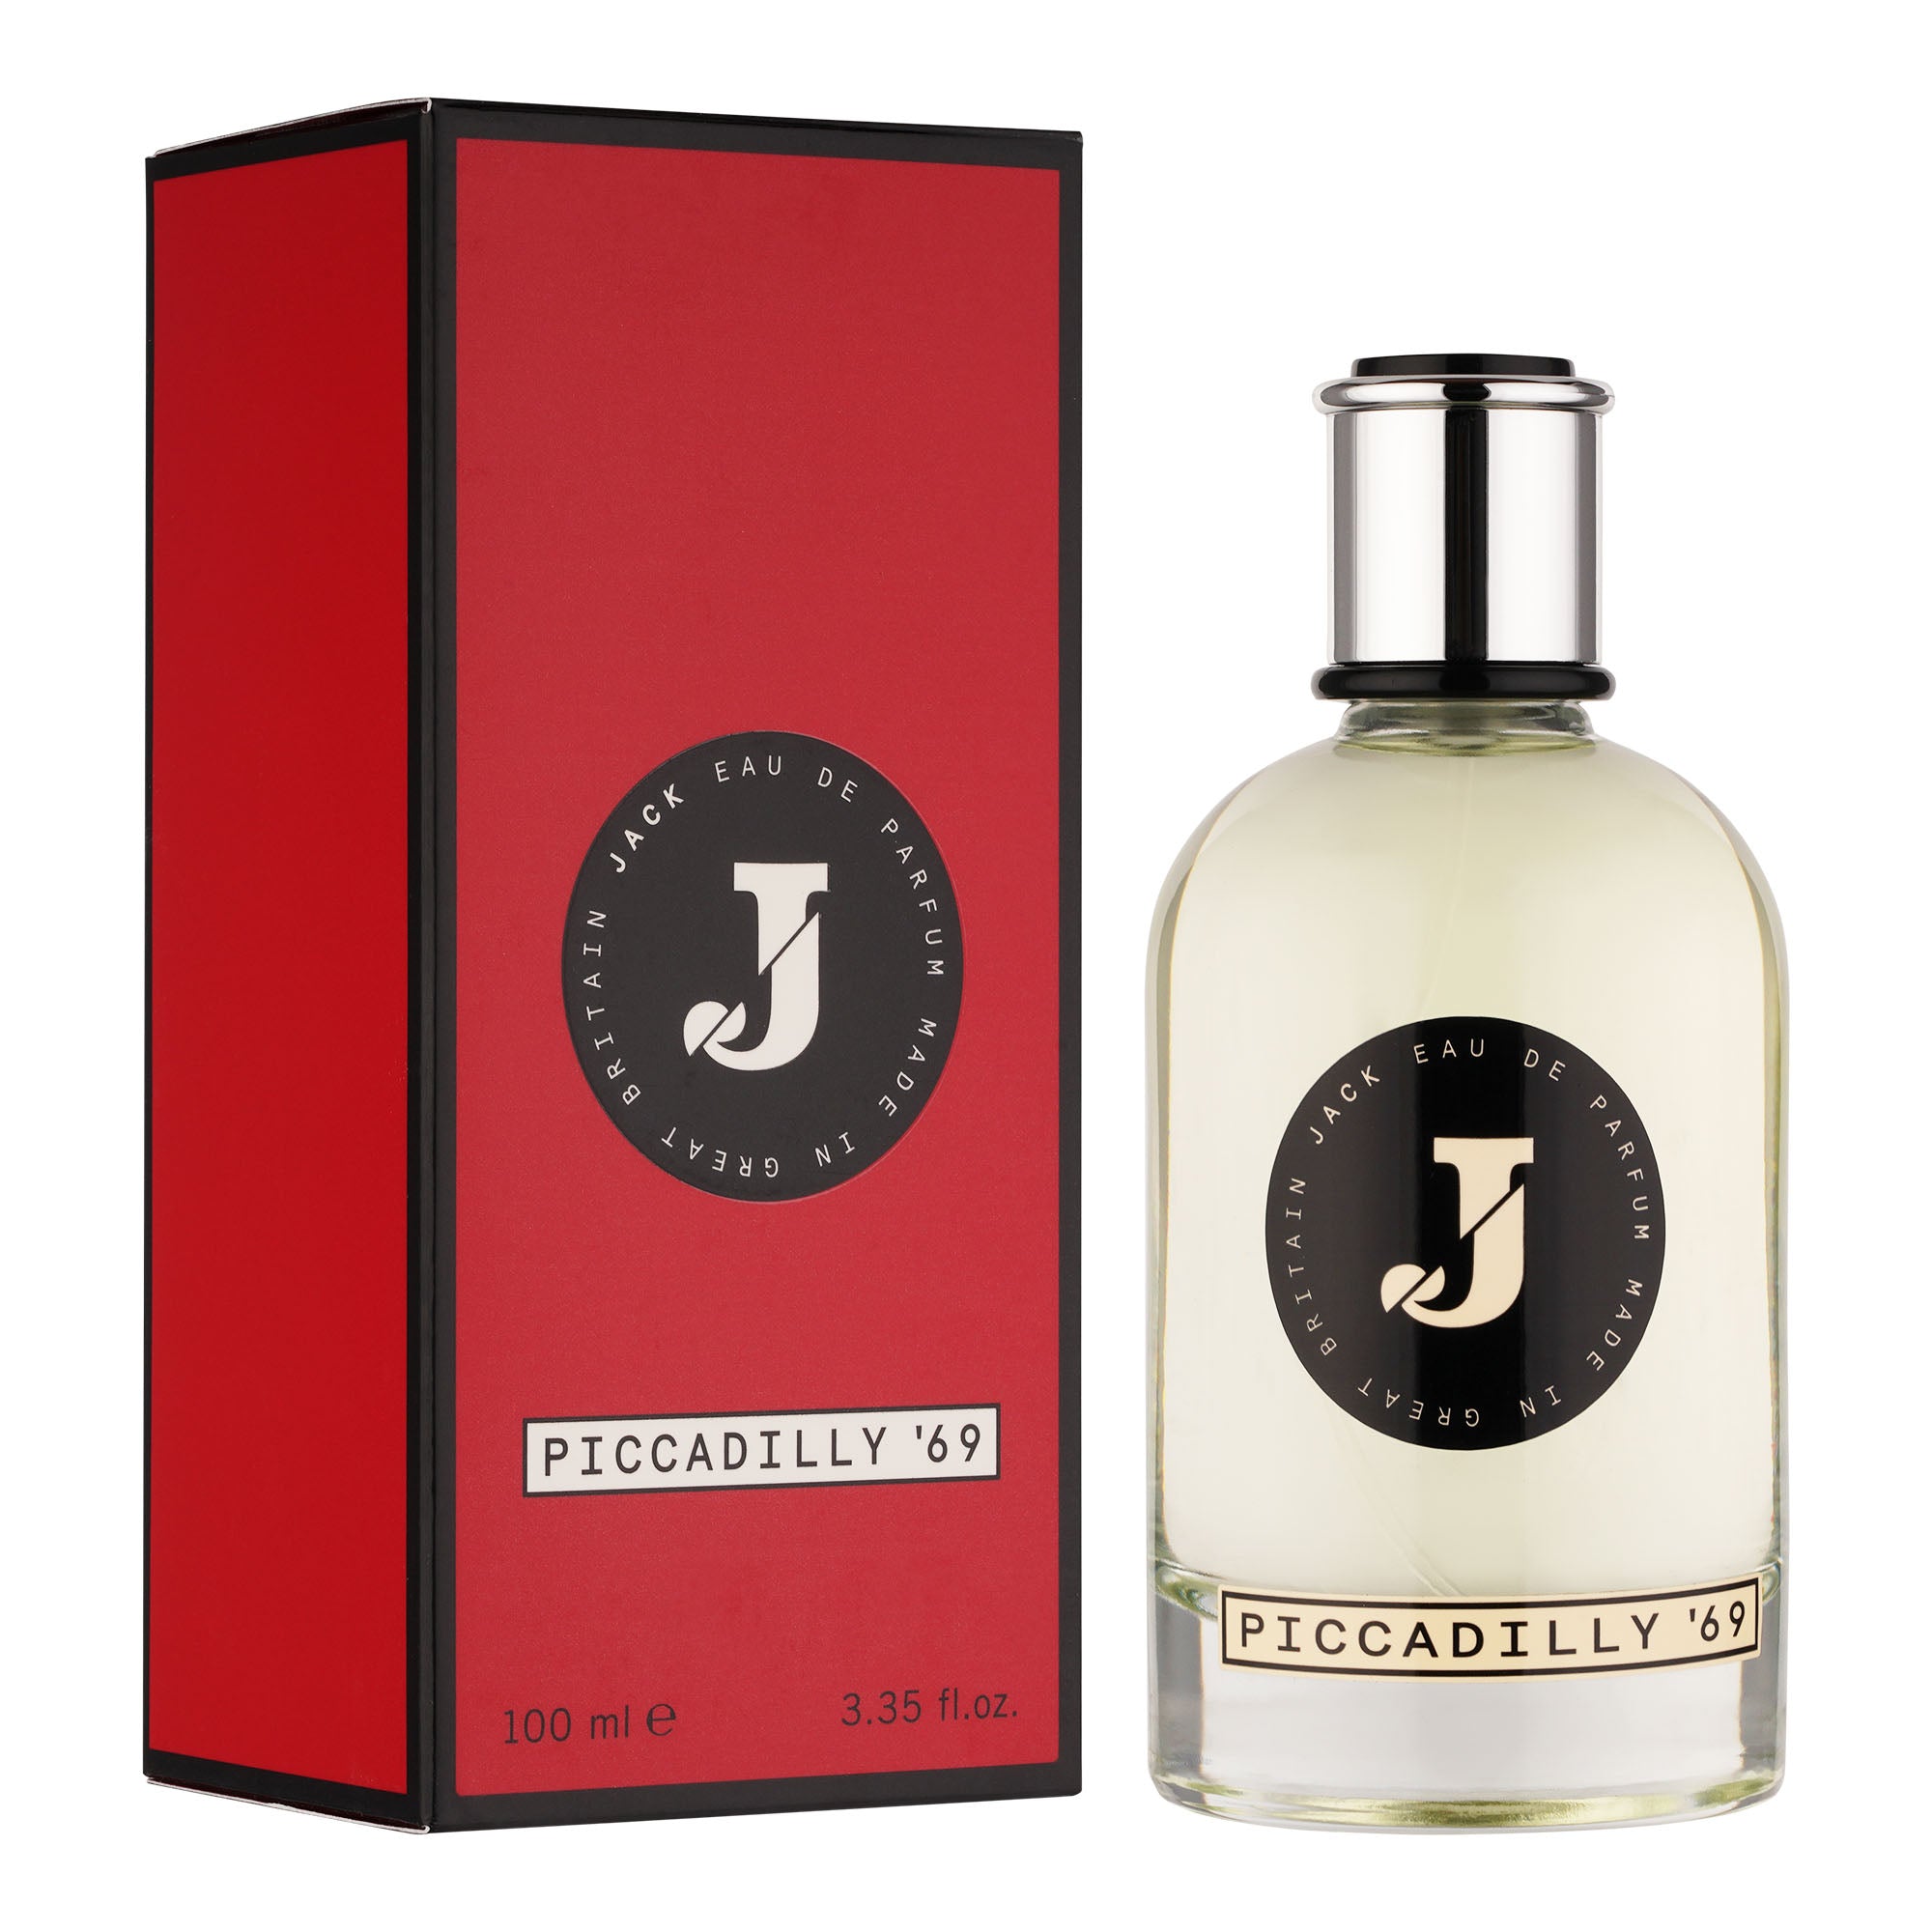 Jack Perfume Piccadilly '69 Eau de Parfum 100ml